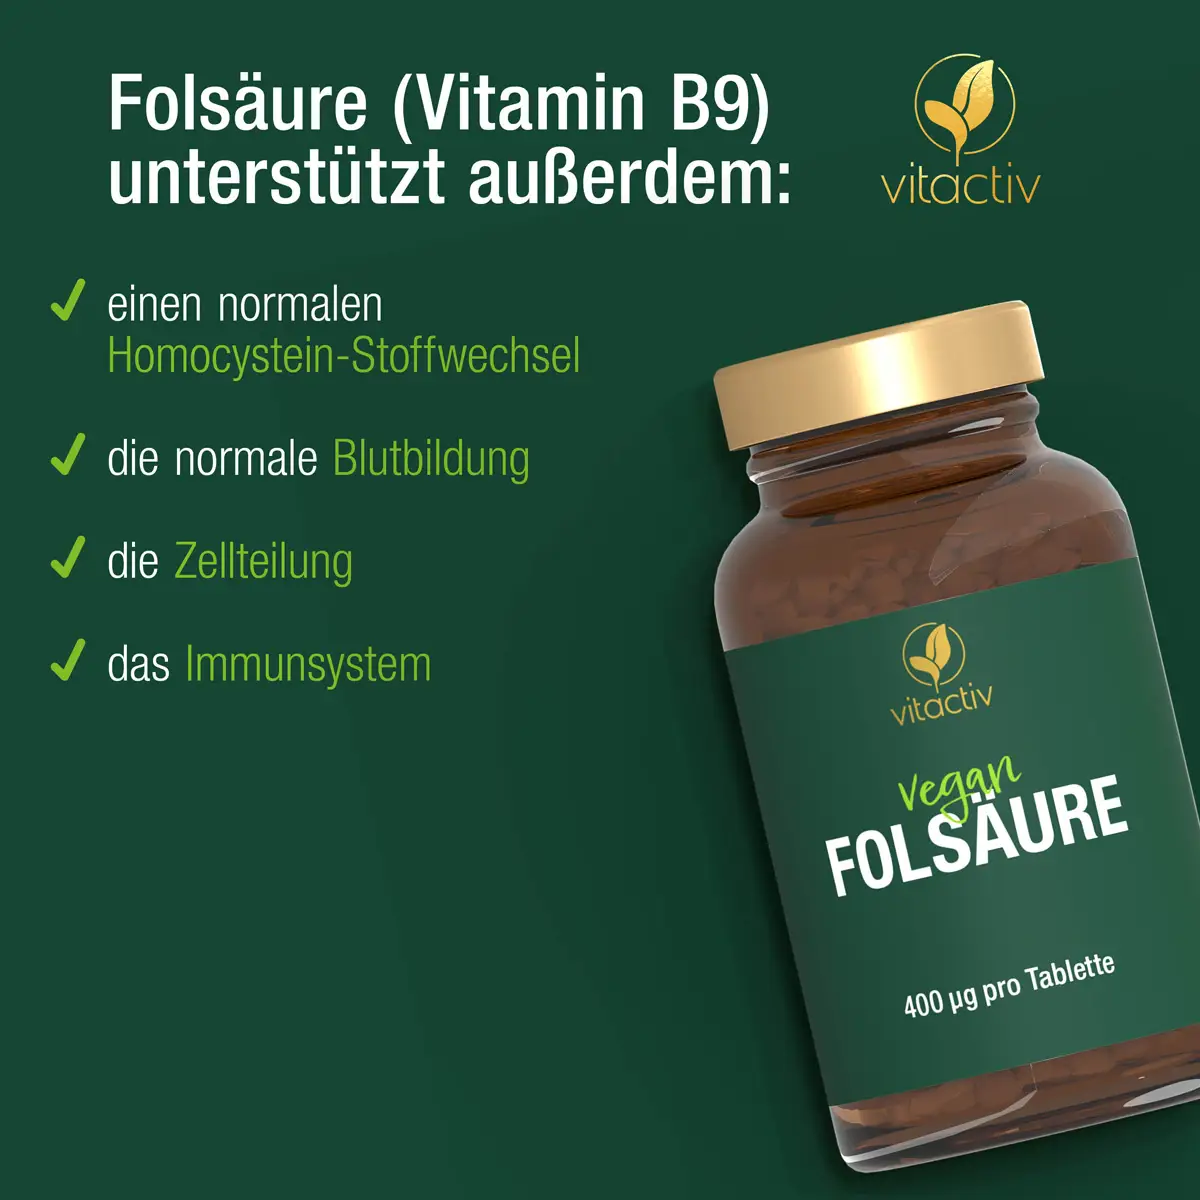 Folsäure unterstützt den Homocystein-Stoffwechsel, die Blutbildung, Zellteilung und das Immunsystem.